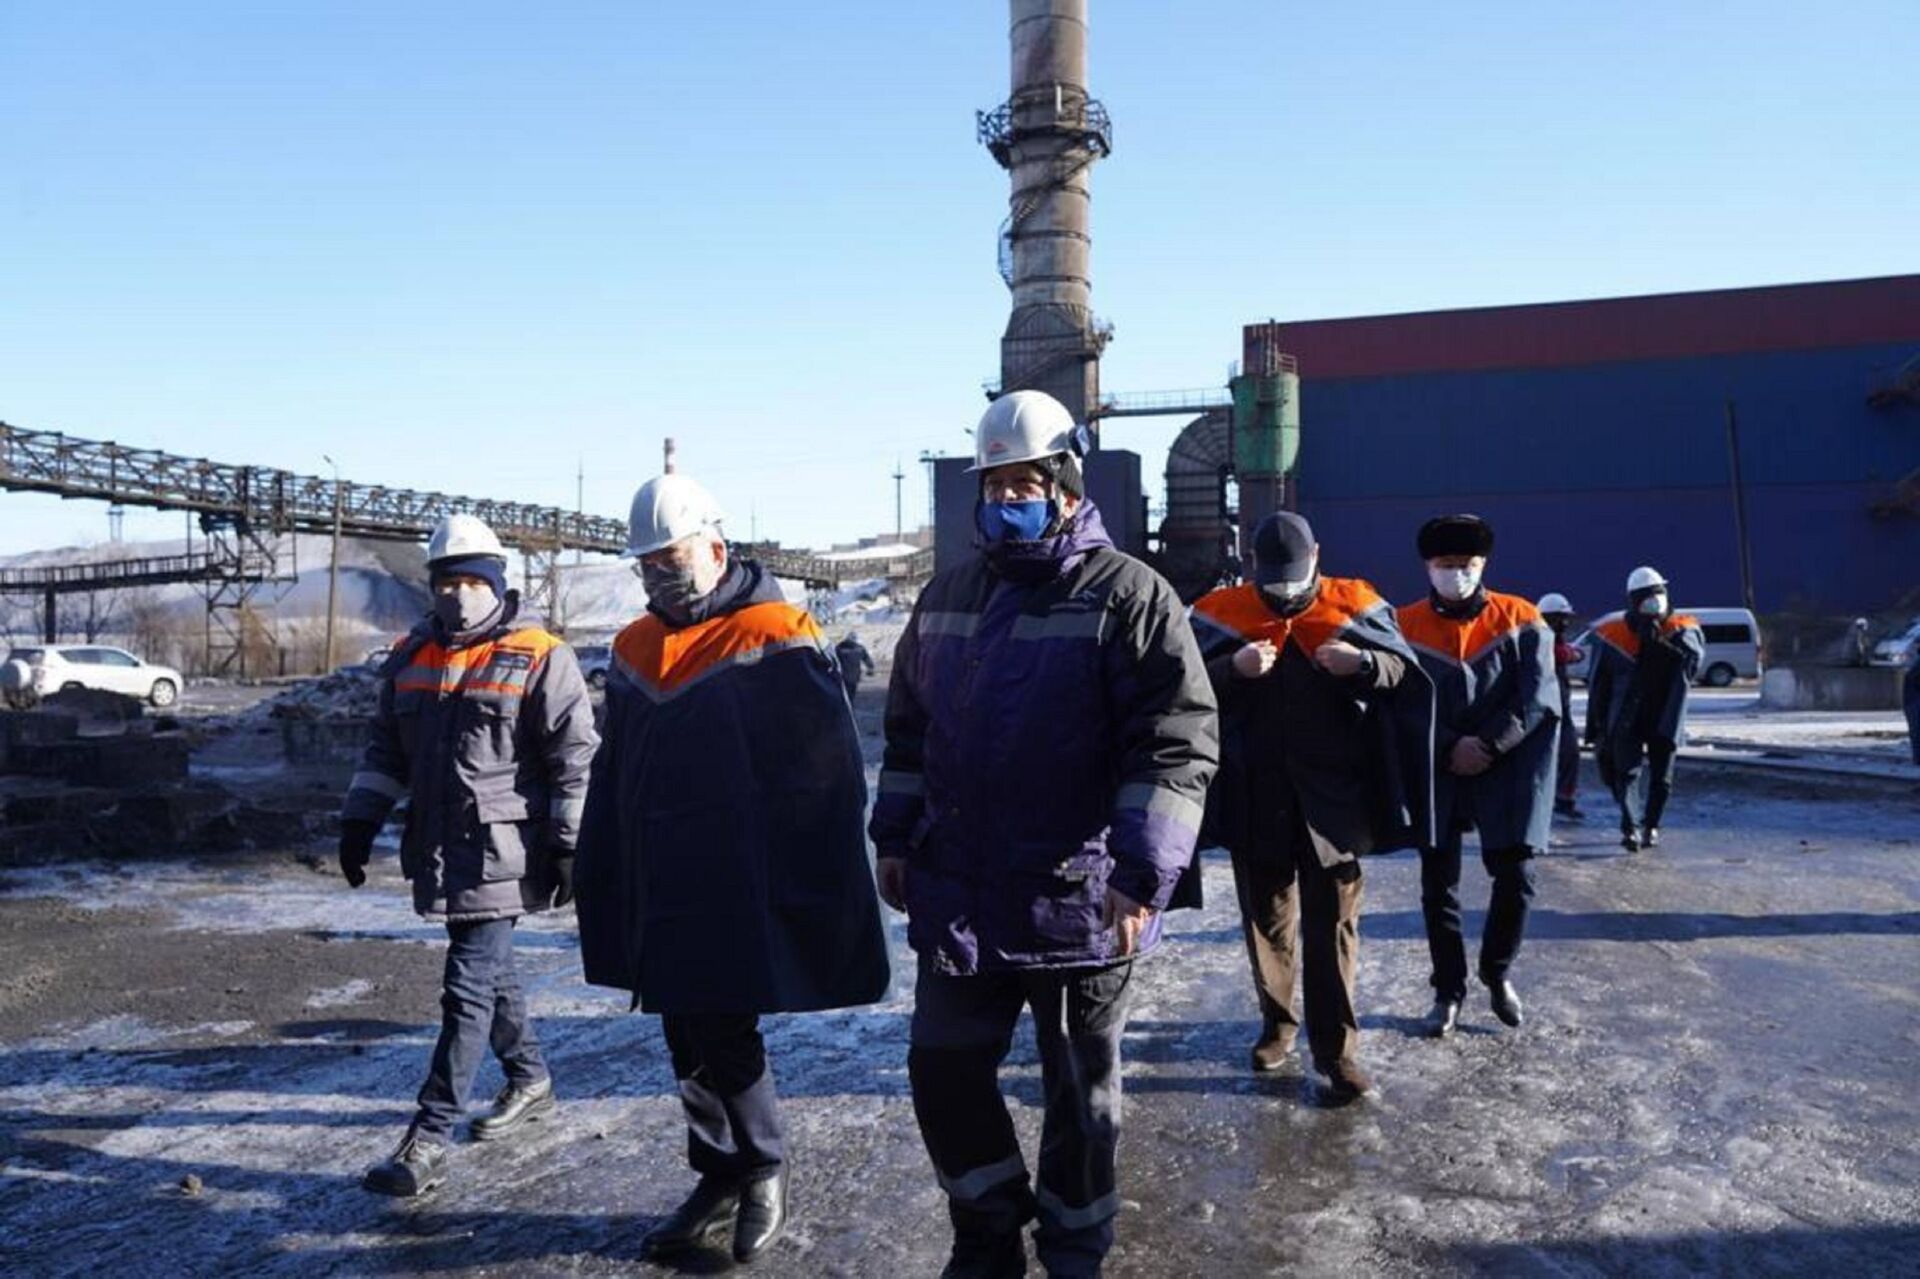 Глава Минидустрии посетил комбинат в Темиртау после видео о розовом дыме - Sputnik Казахстан, 1920, 21.02.2021